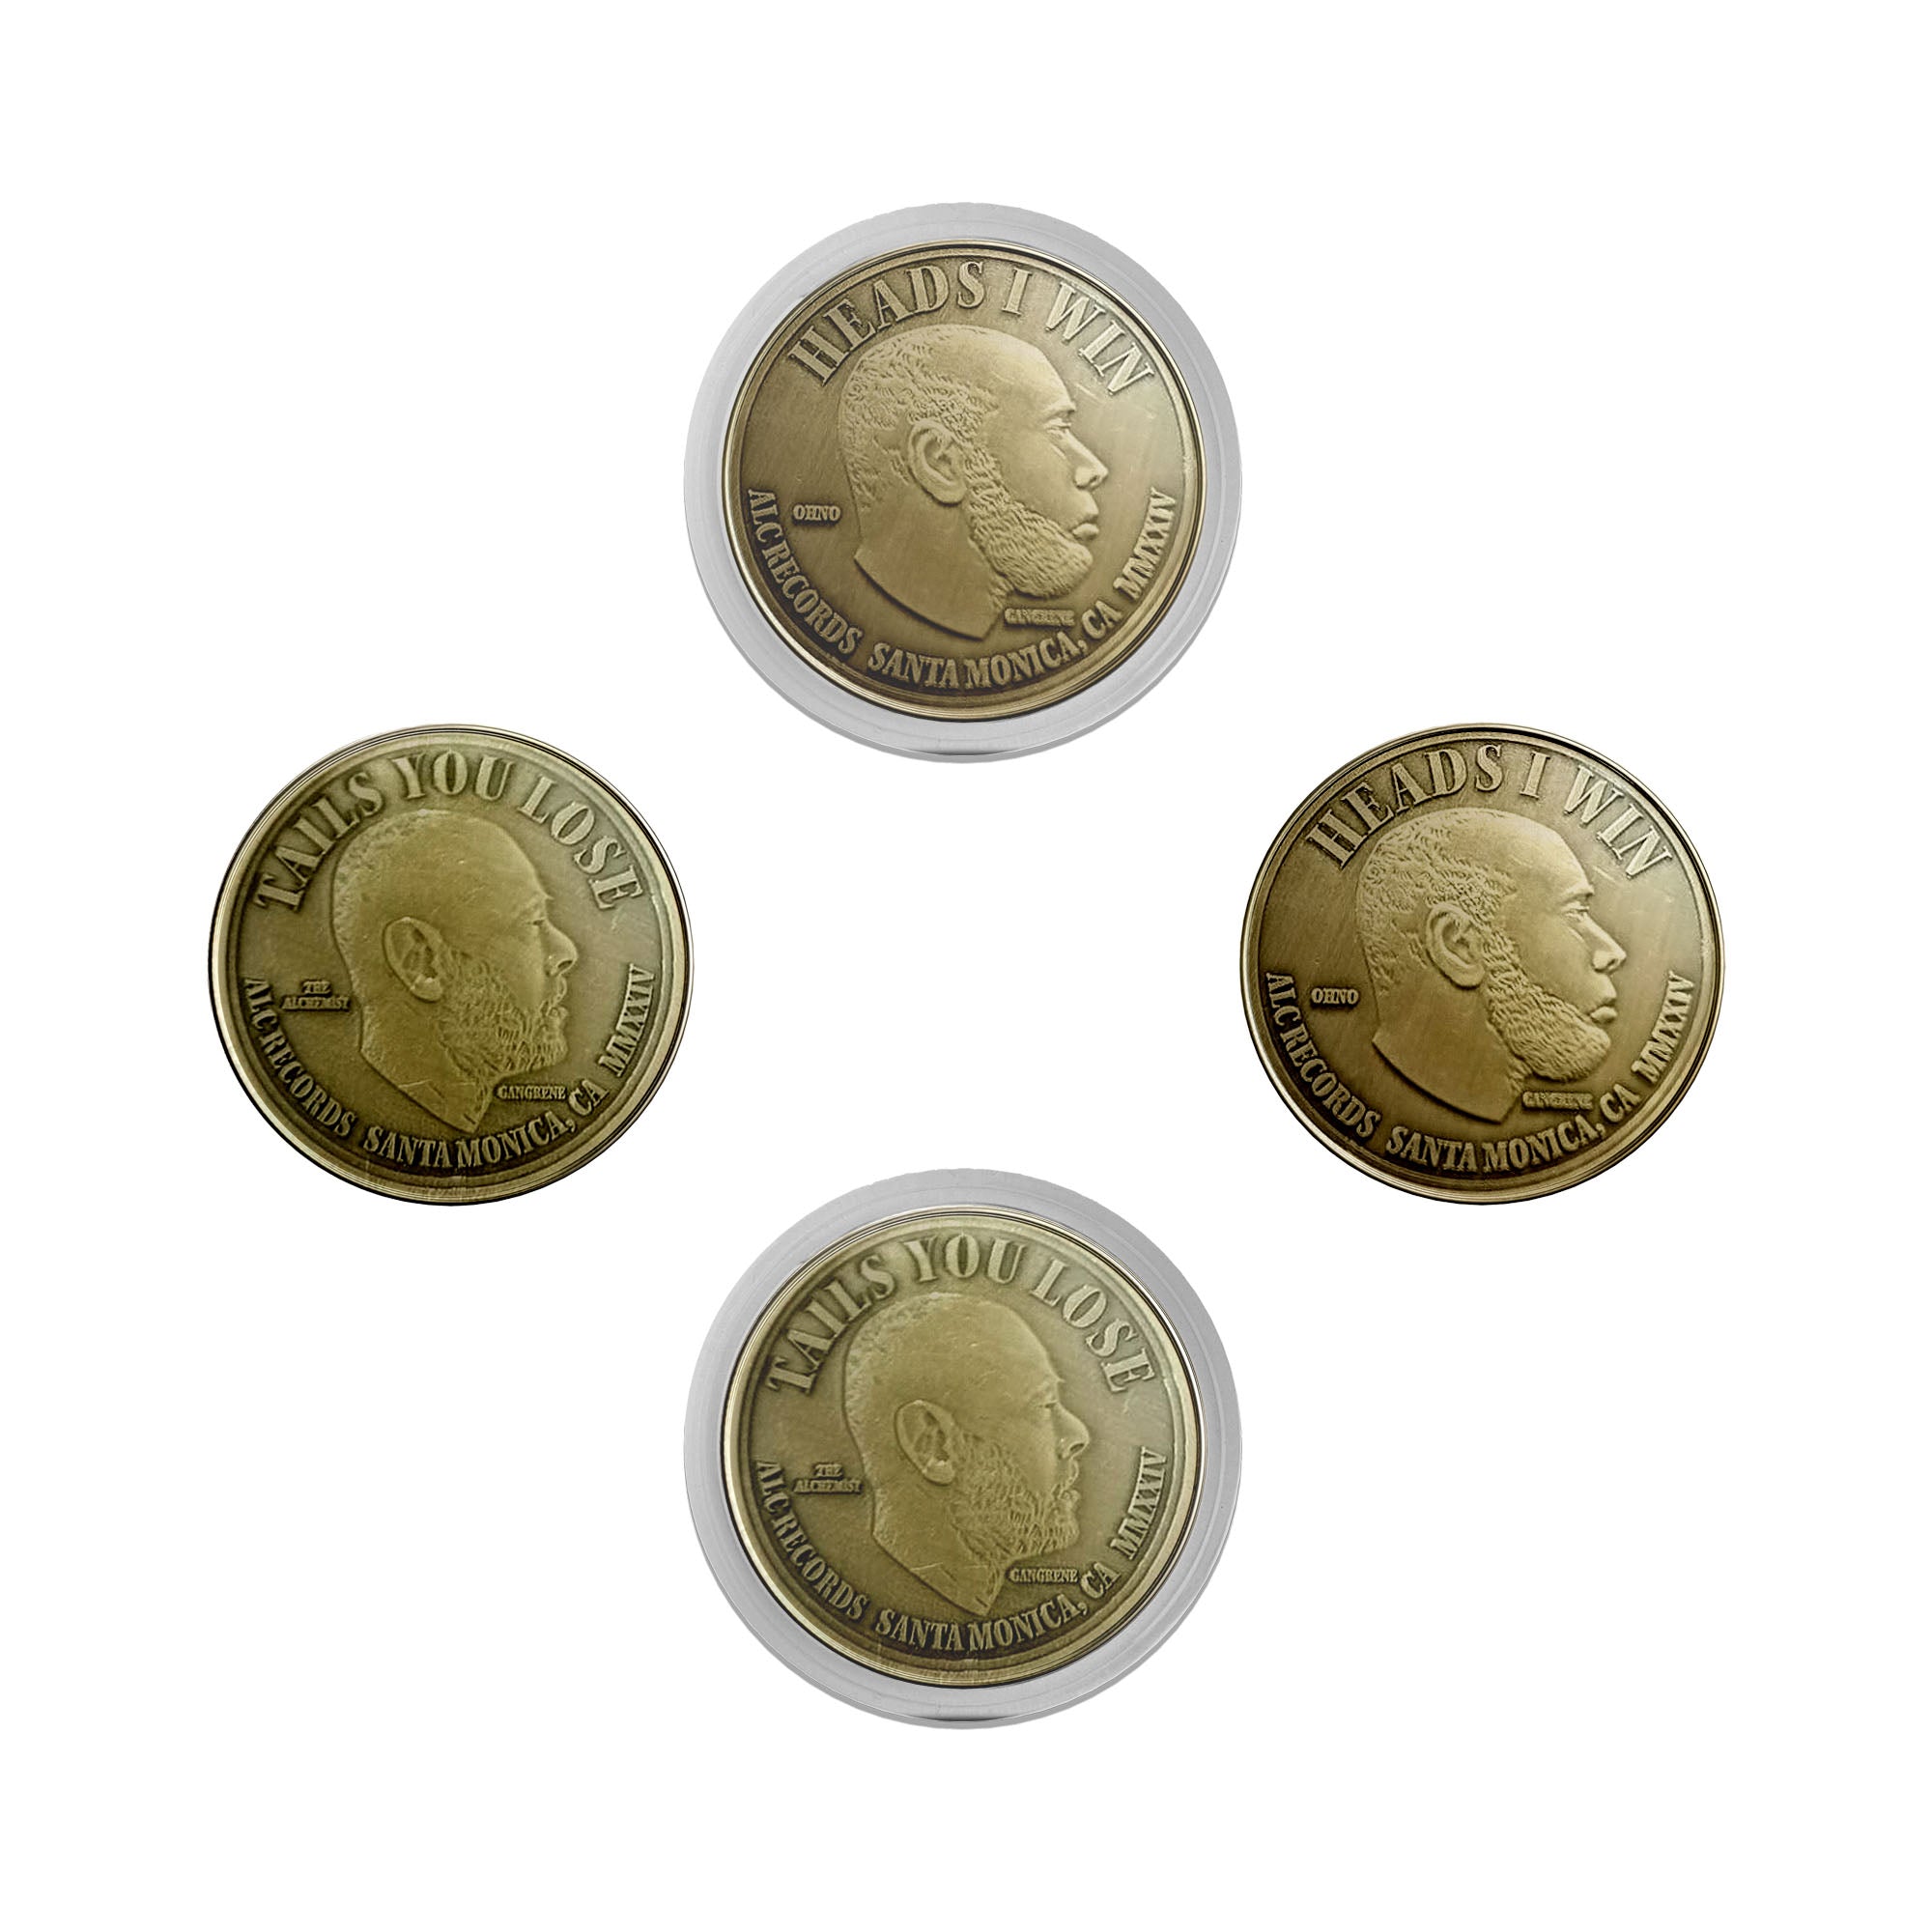 Hustler's Coin (Collectable Coin)